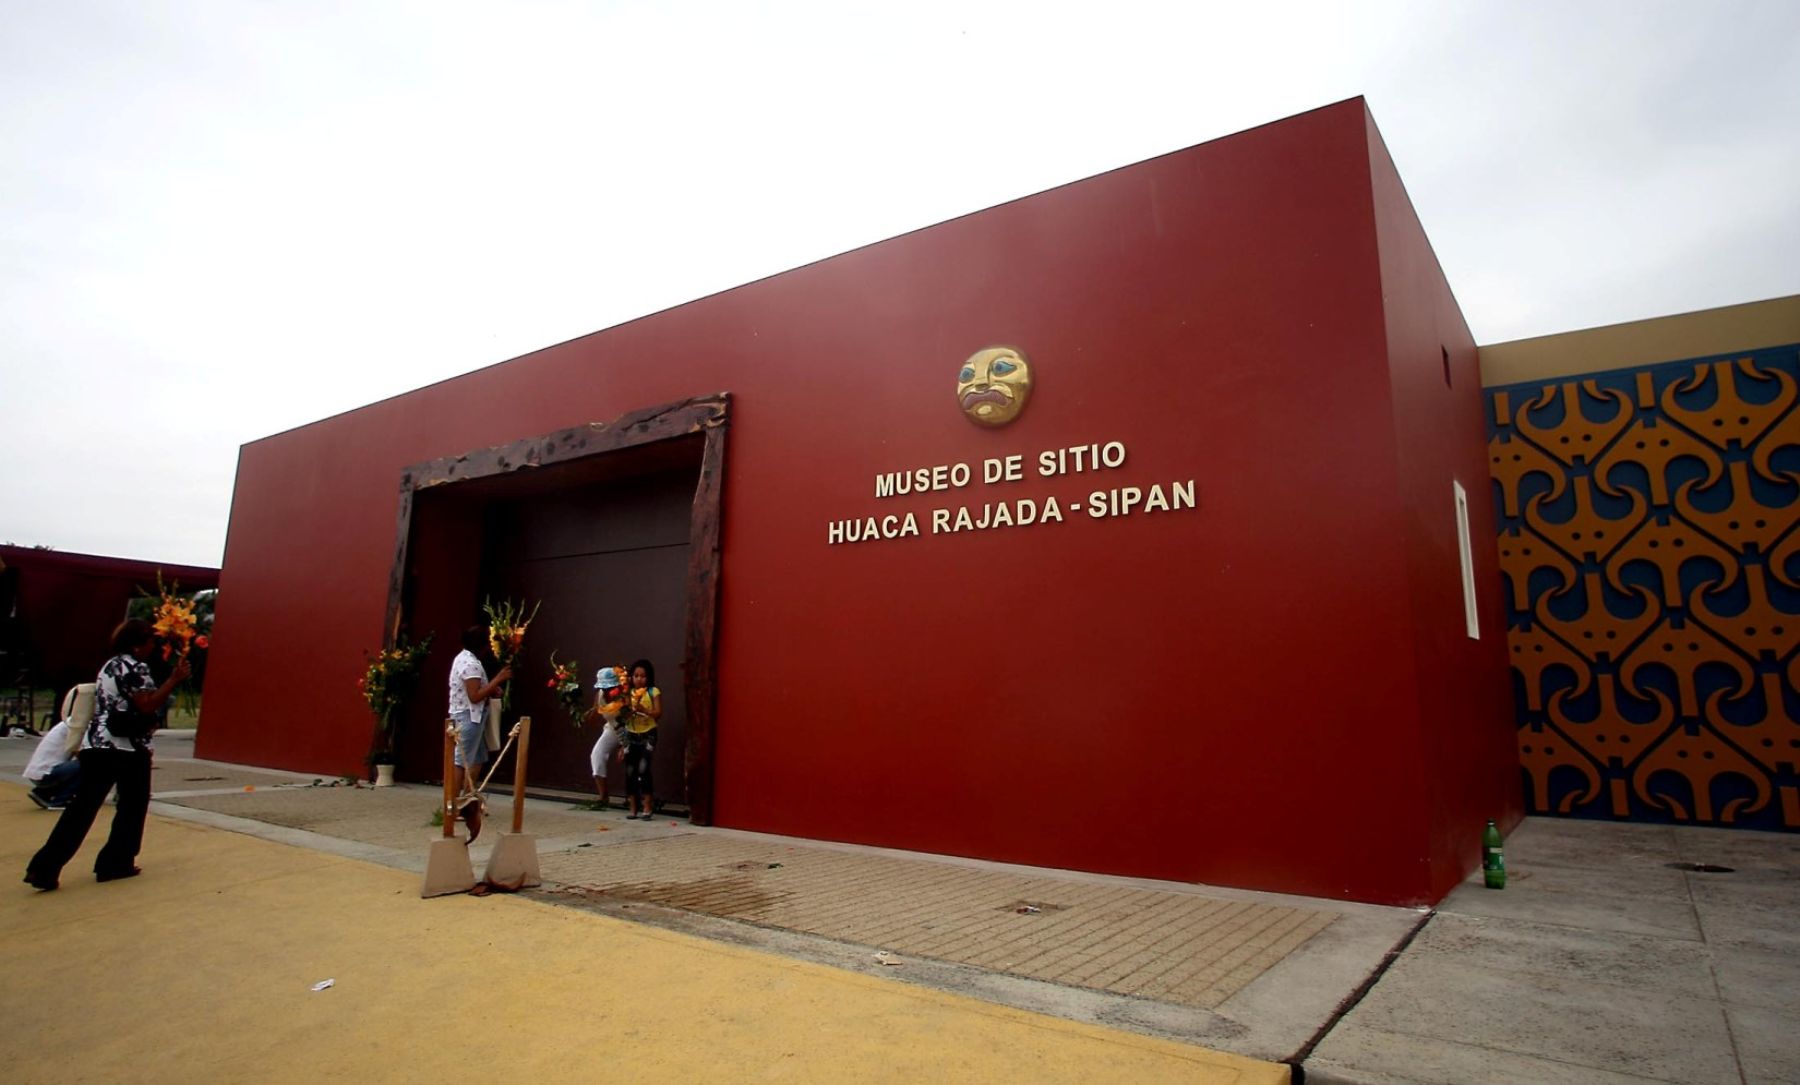 Los museos Tumbas Reales de Sipán y museo de sitio Huaca Rajada-Sipán, en la región Lambayeque, atenderán en sus horarios habituales el martes 2 de enero, declarado feriado no laborable por Decreto Supremo 001-2017-PCM. ANDINA/archivo